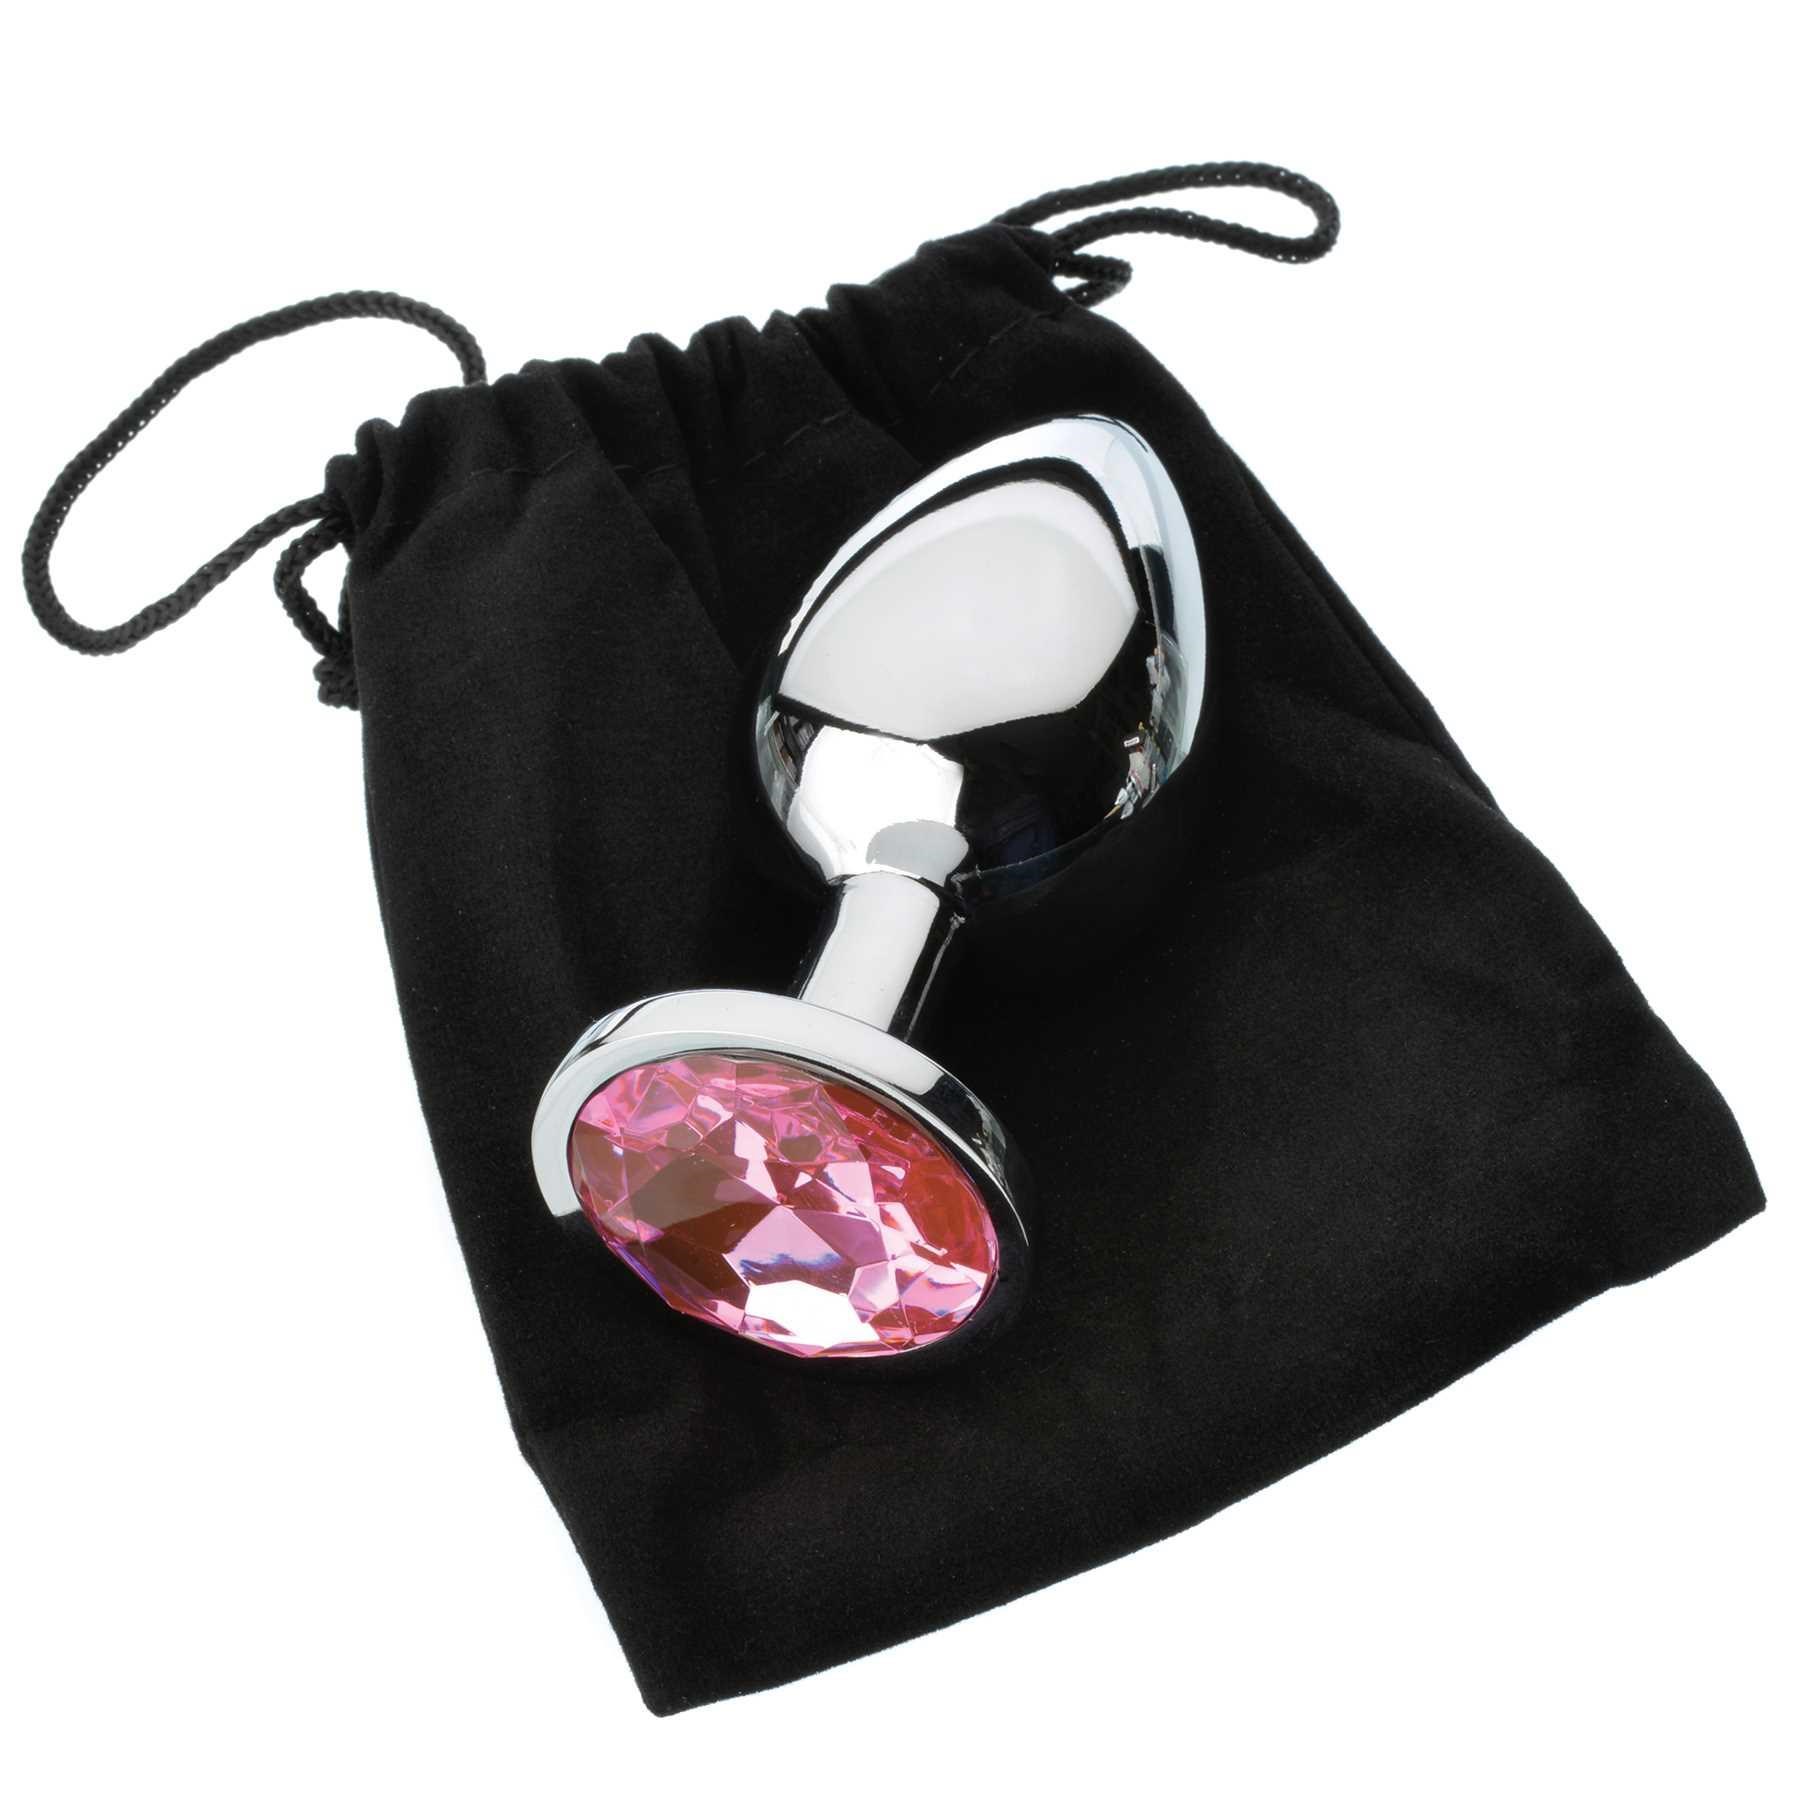 Pink anal plug set with bag